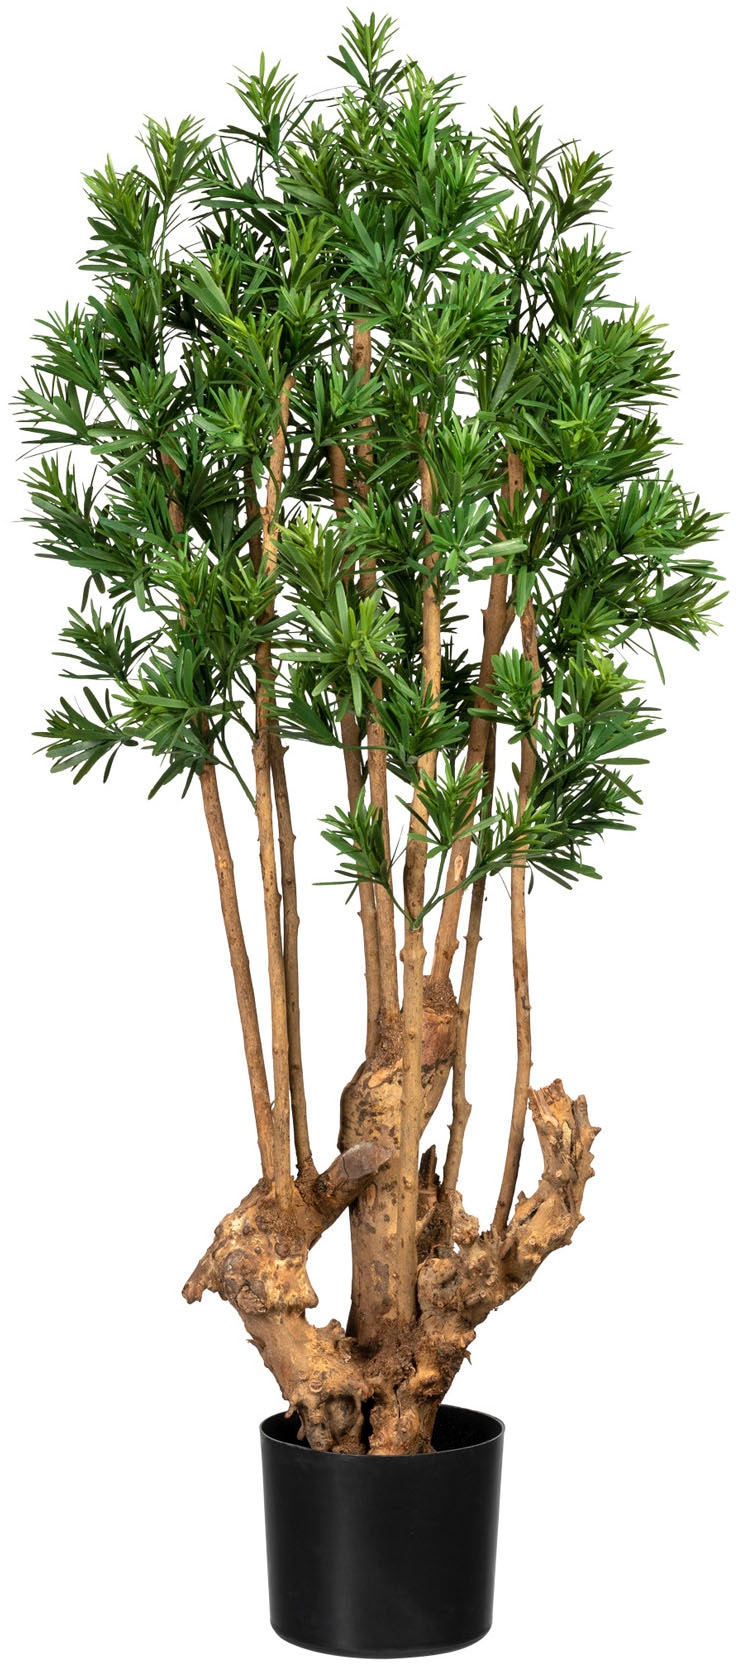 kaufen »Podocarpus green Zimmerpflanze Künstliche macrophyllus« bequem Creativ